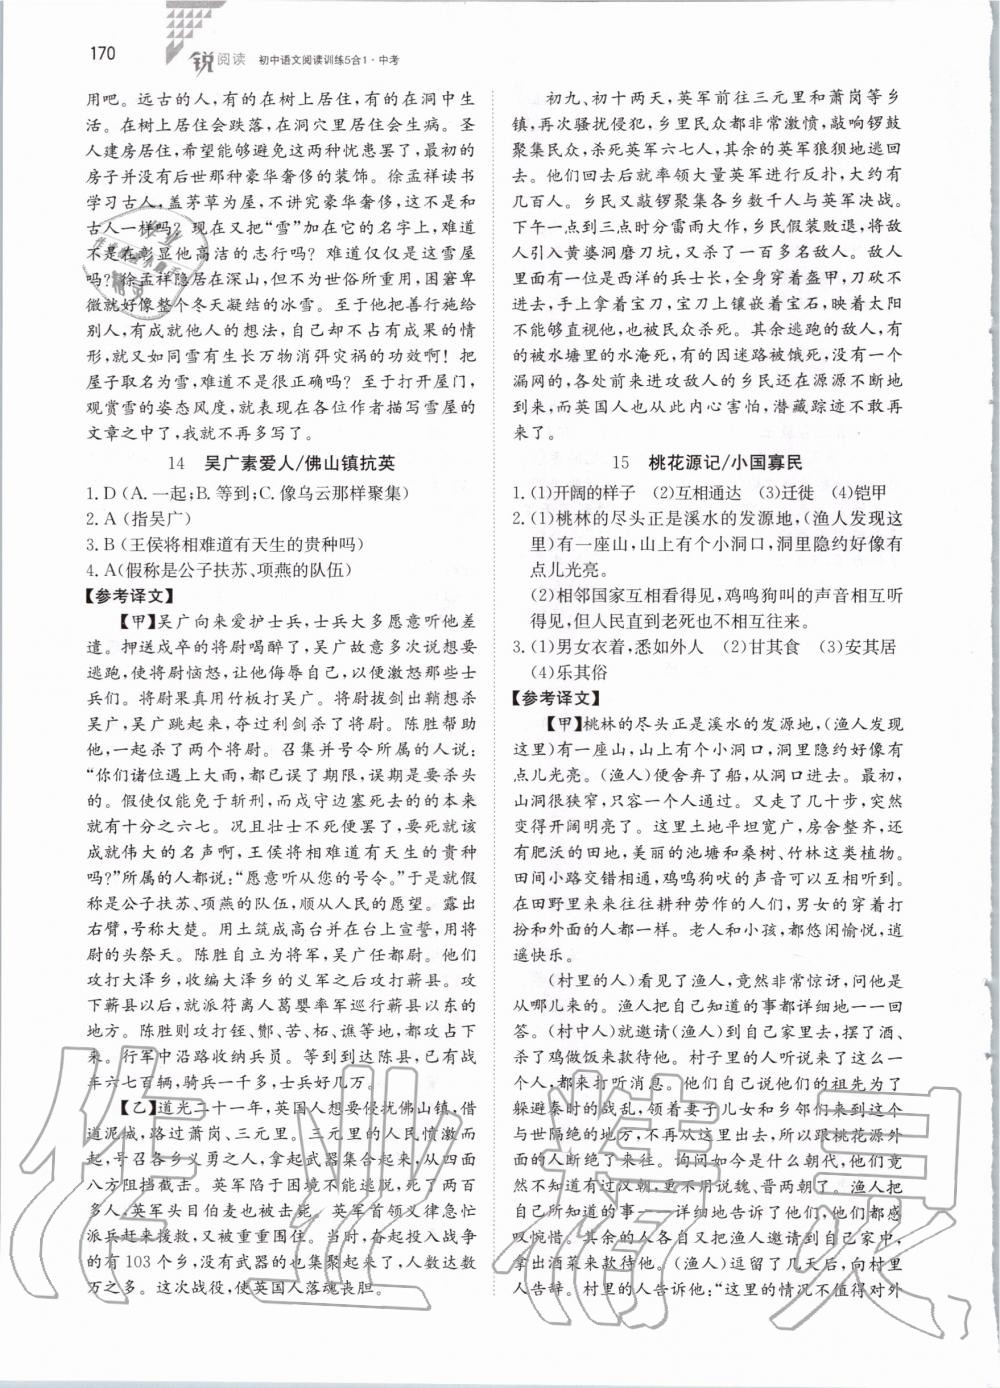 2019年锐阅读初中语文阅读训练5合1中考 第16页